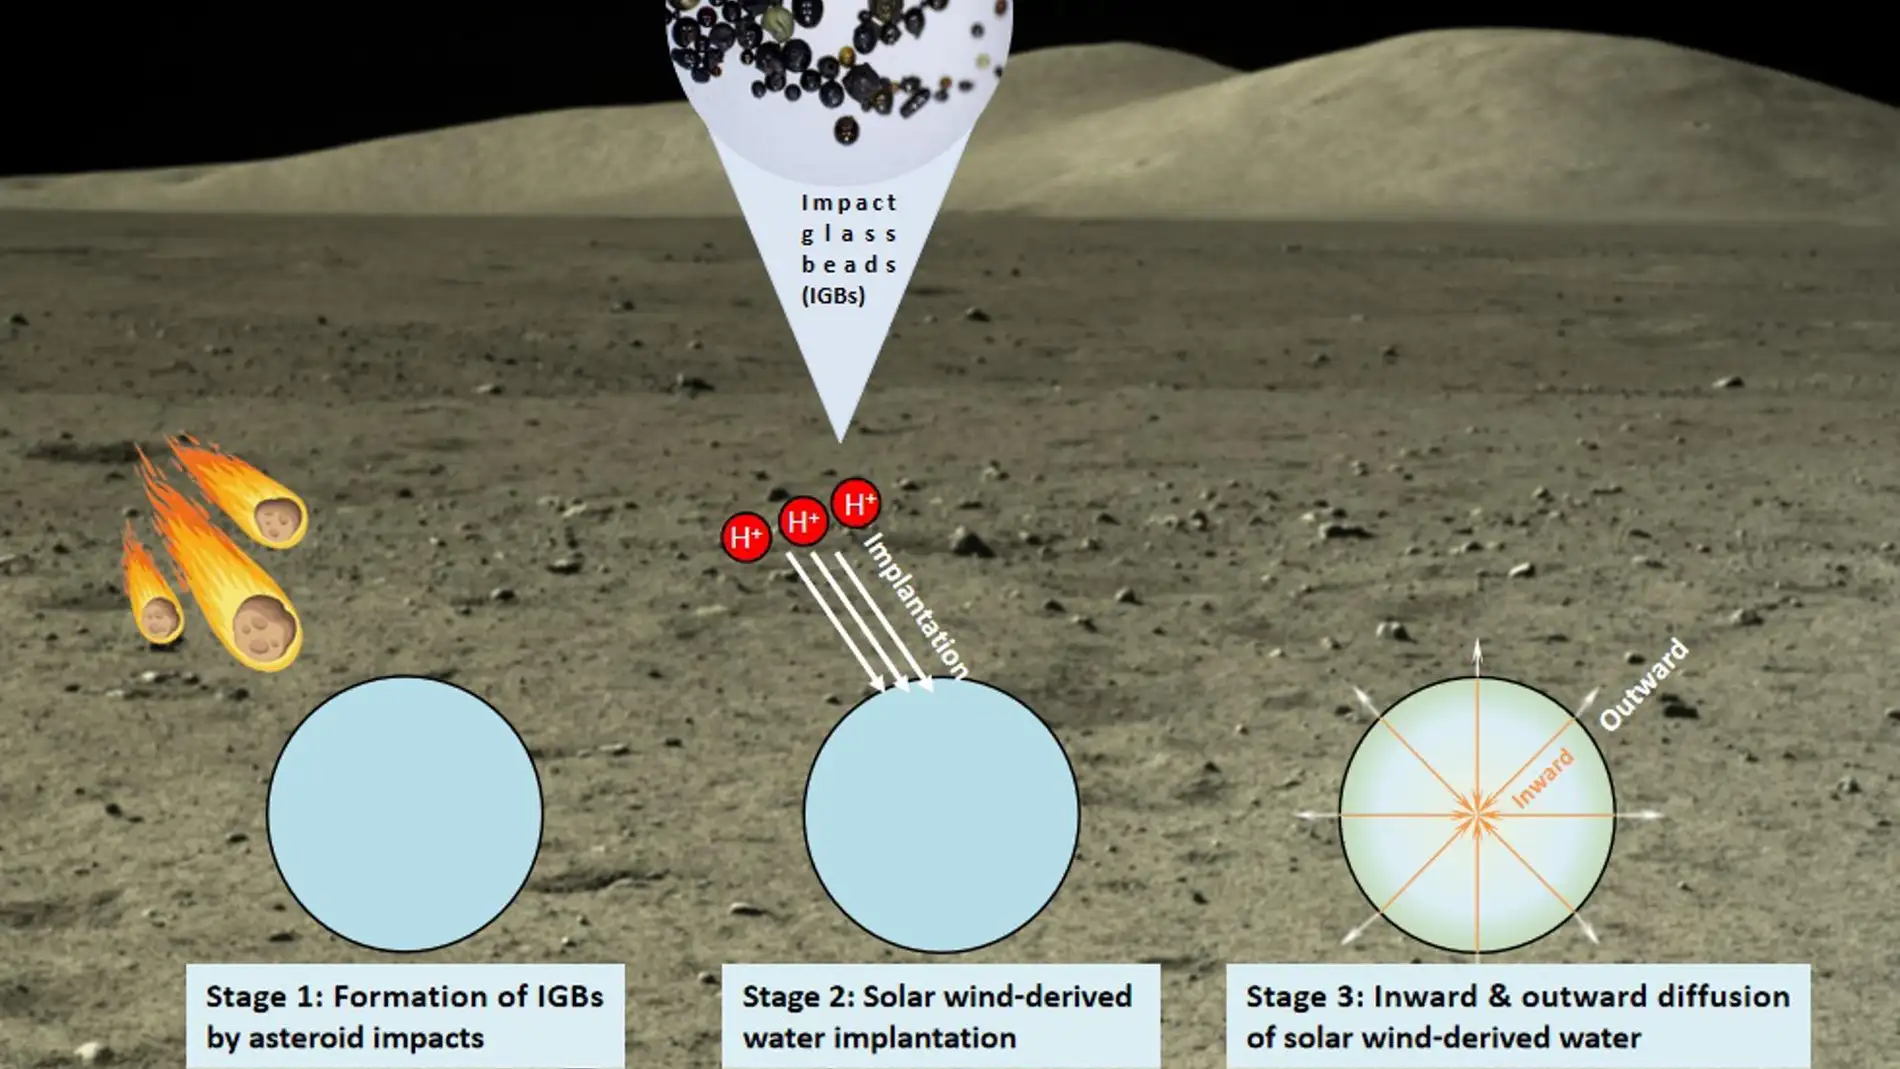 Diagrama esquemático del ciclo del agua en la superficie lunar asociado a las perlas de vidrio de impacto. 